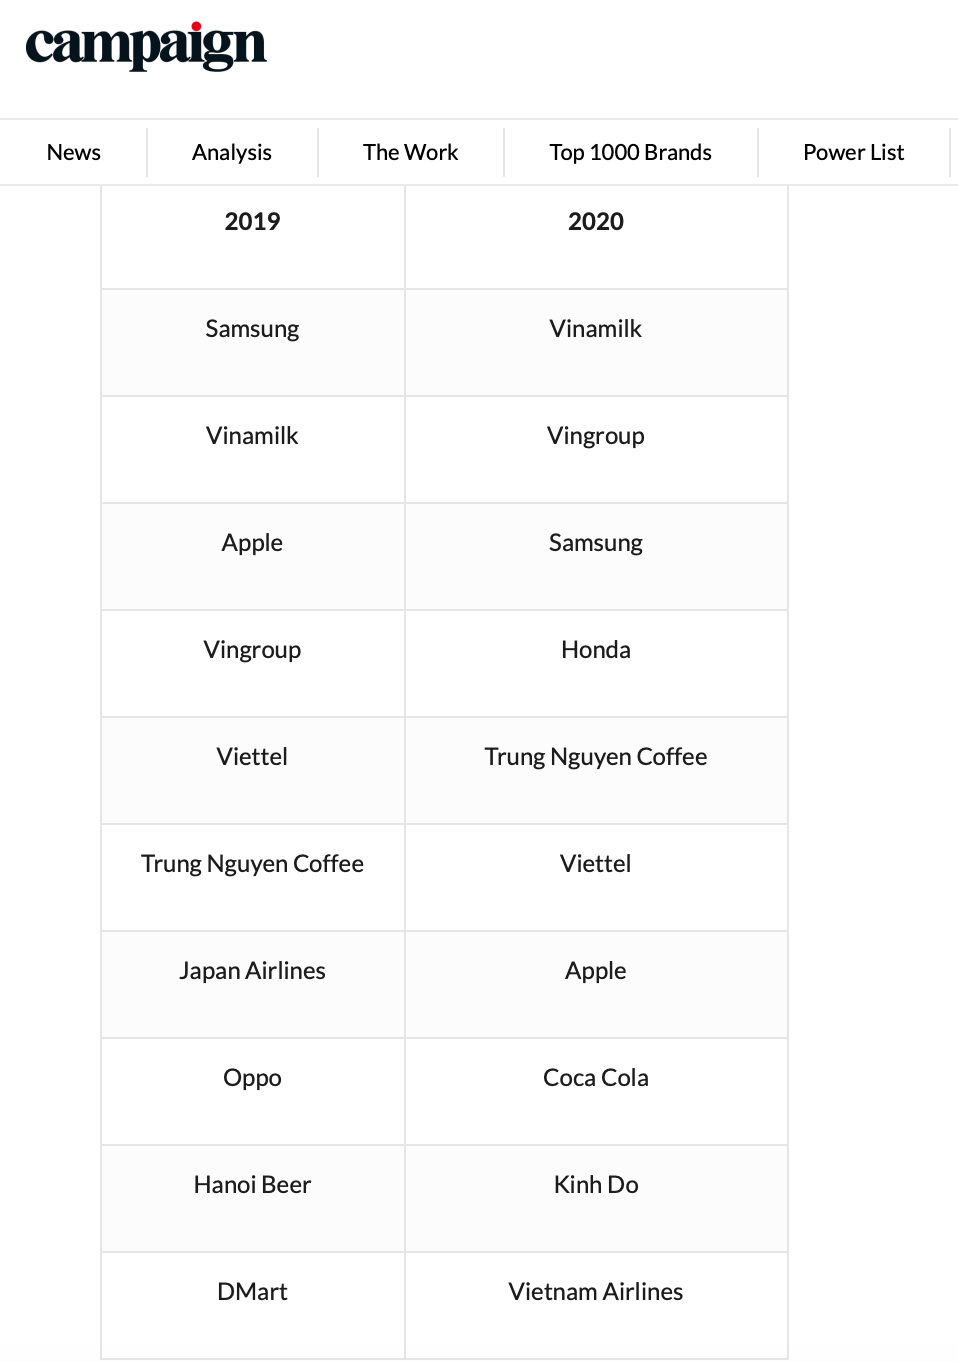 Danh sách các thương hiệu được yêu thích nhất Việt Nam năm 2019 và năm 2020.